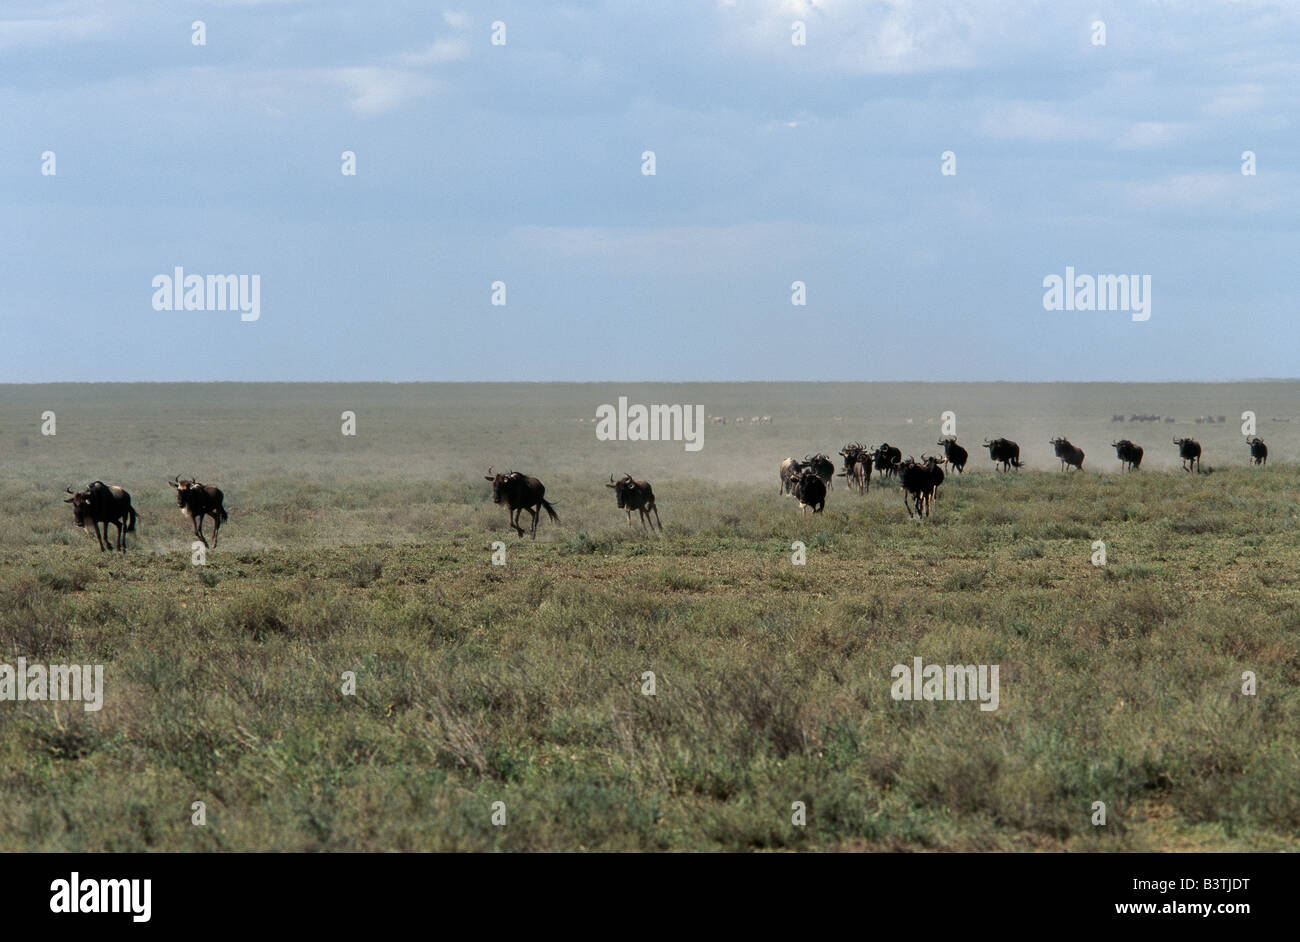 La Tanzanie, la Ngorongoro Conservation Area, Ndutu. Wildebeet à travers les plaines du stampede pendant leur cycle annuel de la migration. Banque D'Images